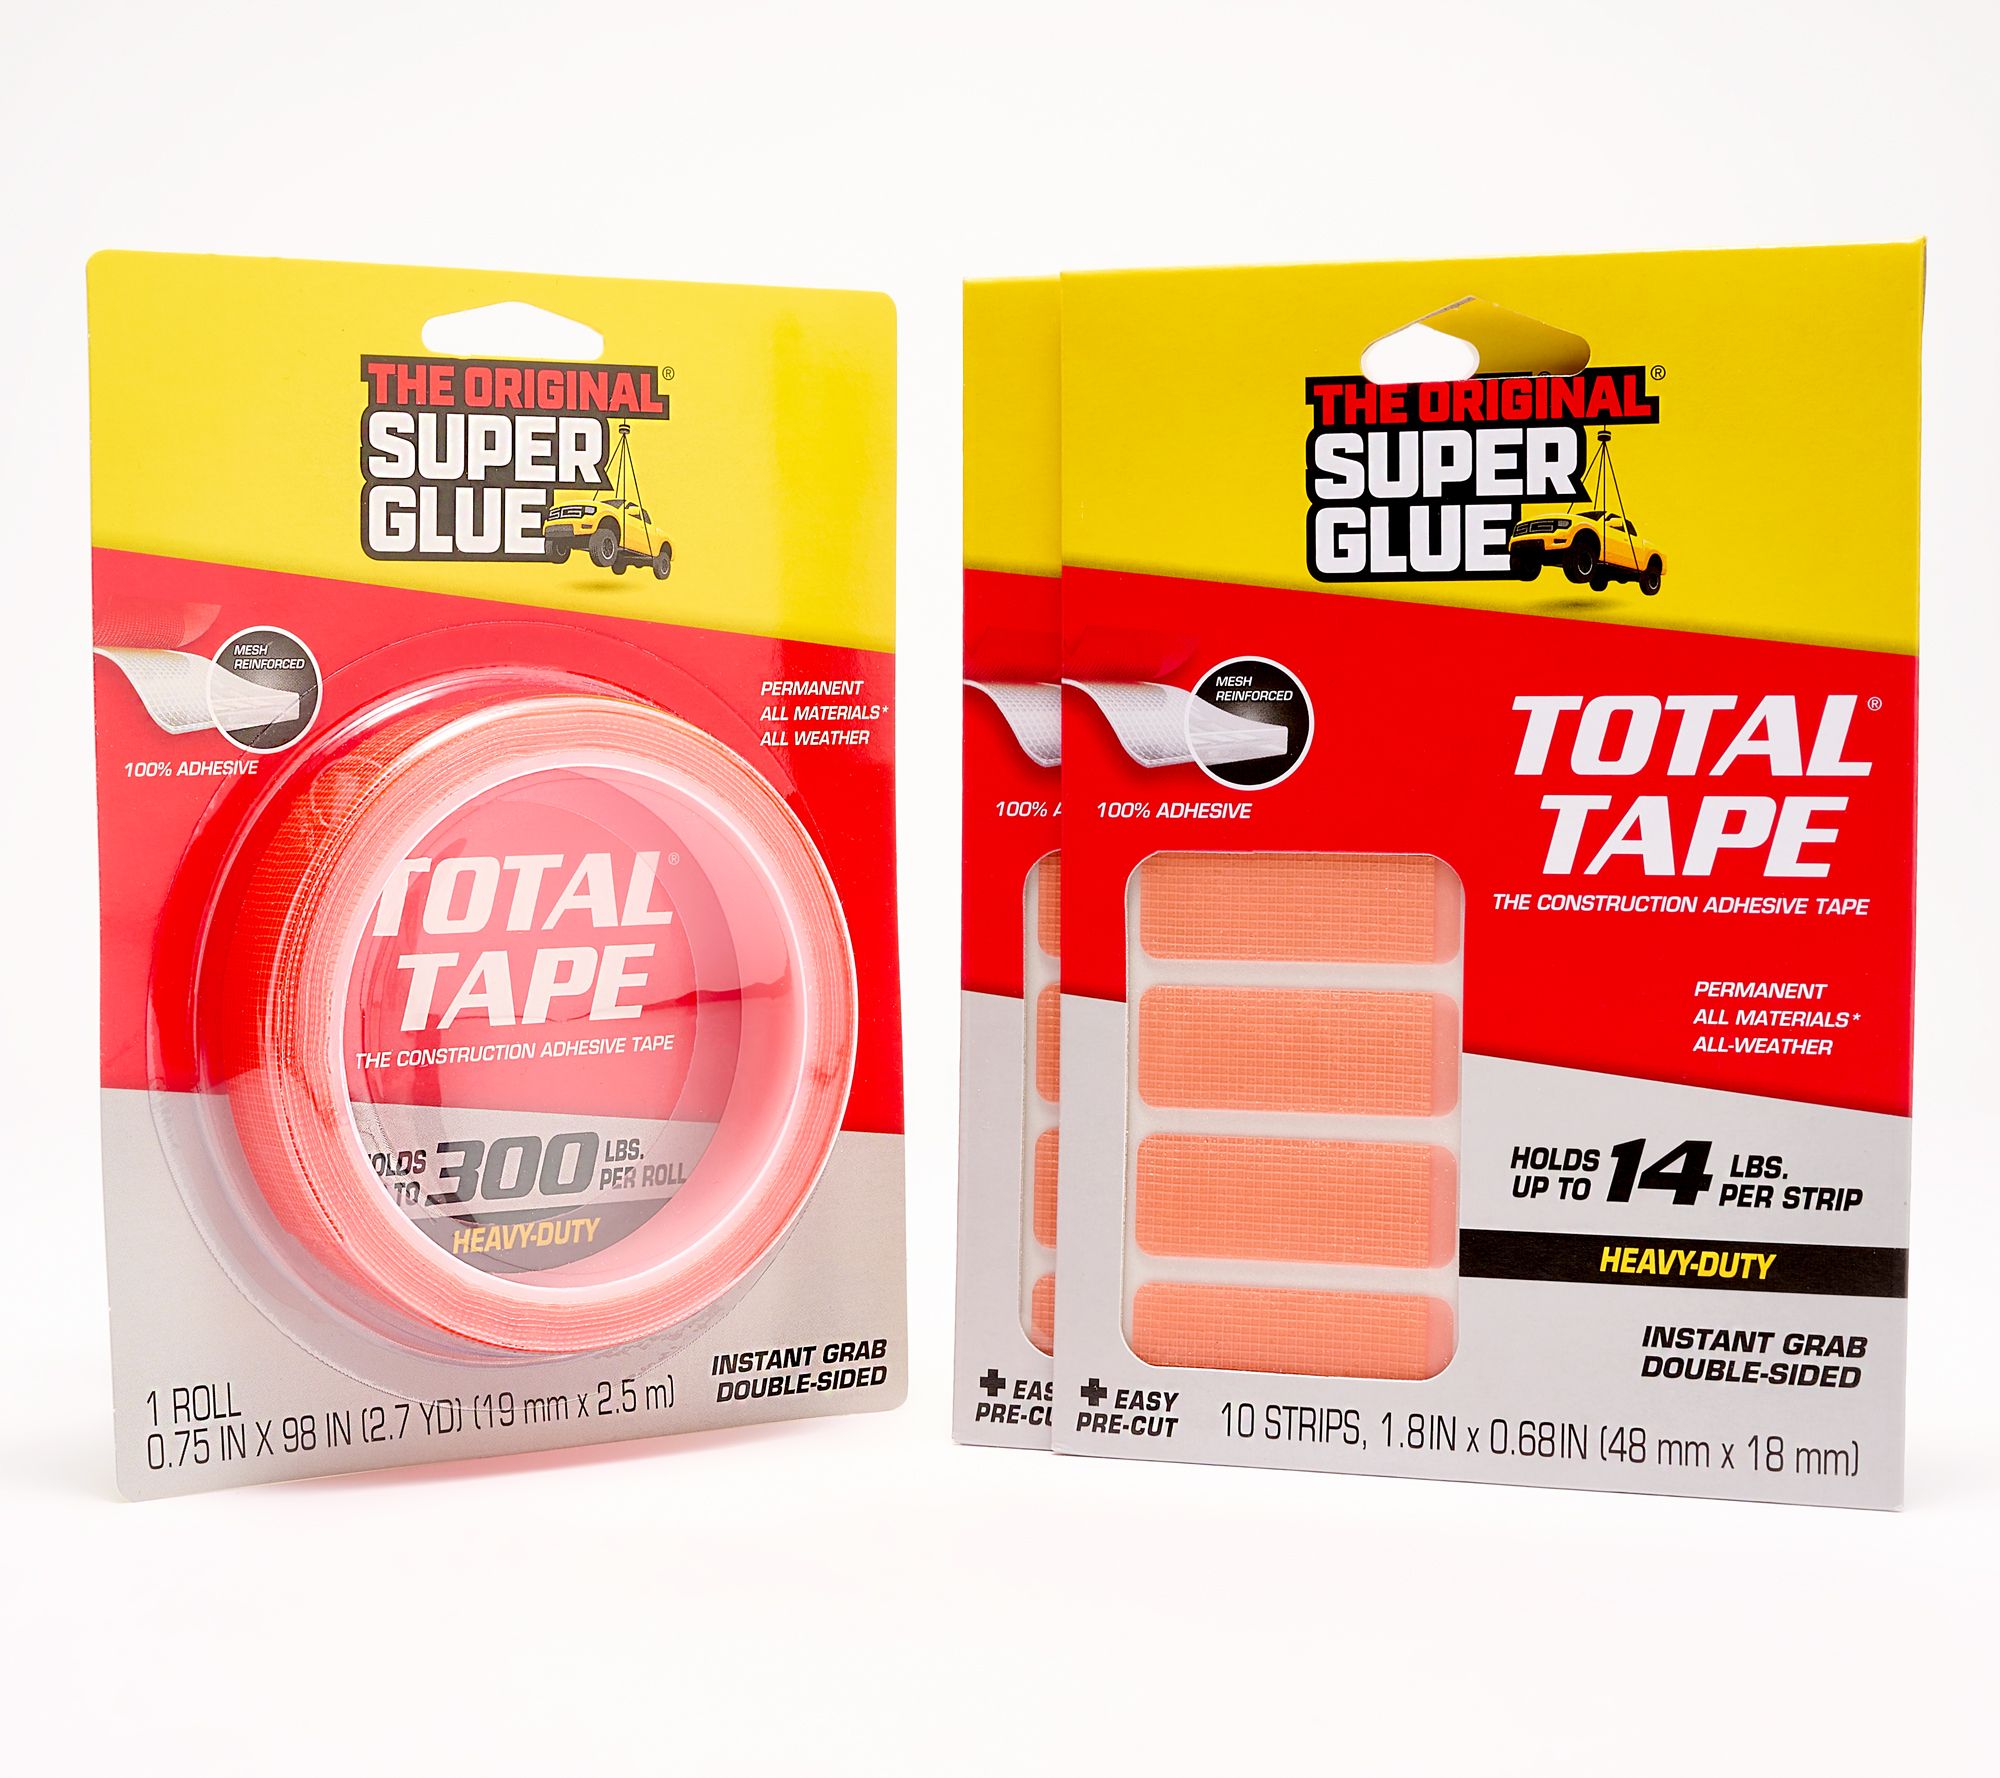 The Original Super Glue Total Tape 98 Roll, 1.8 pre- cut Strips 